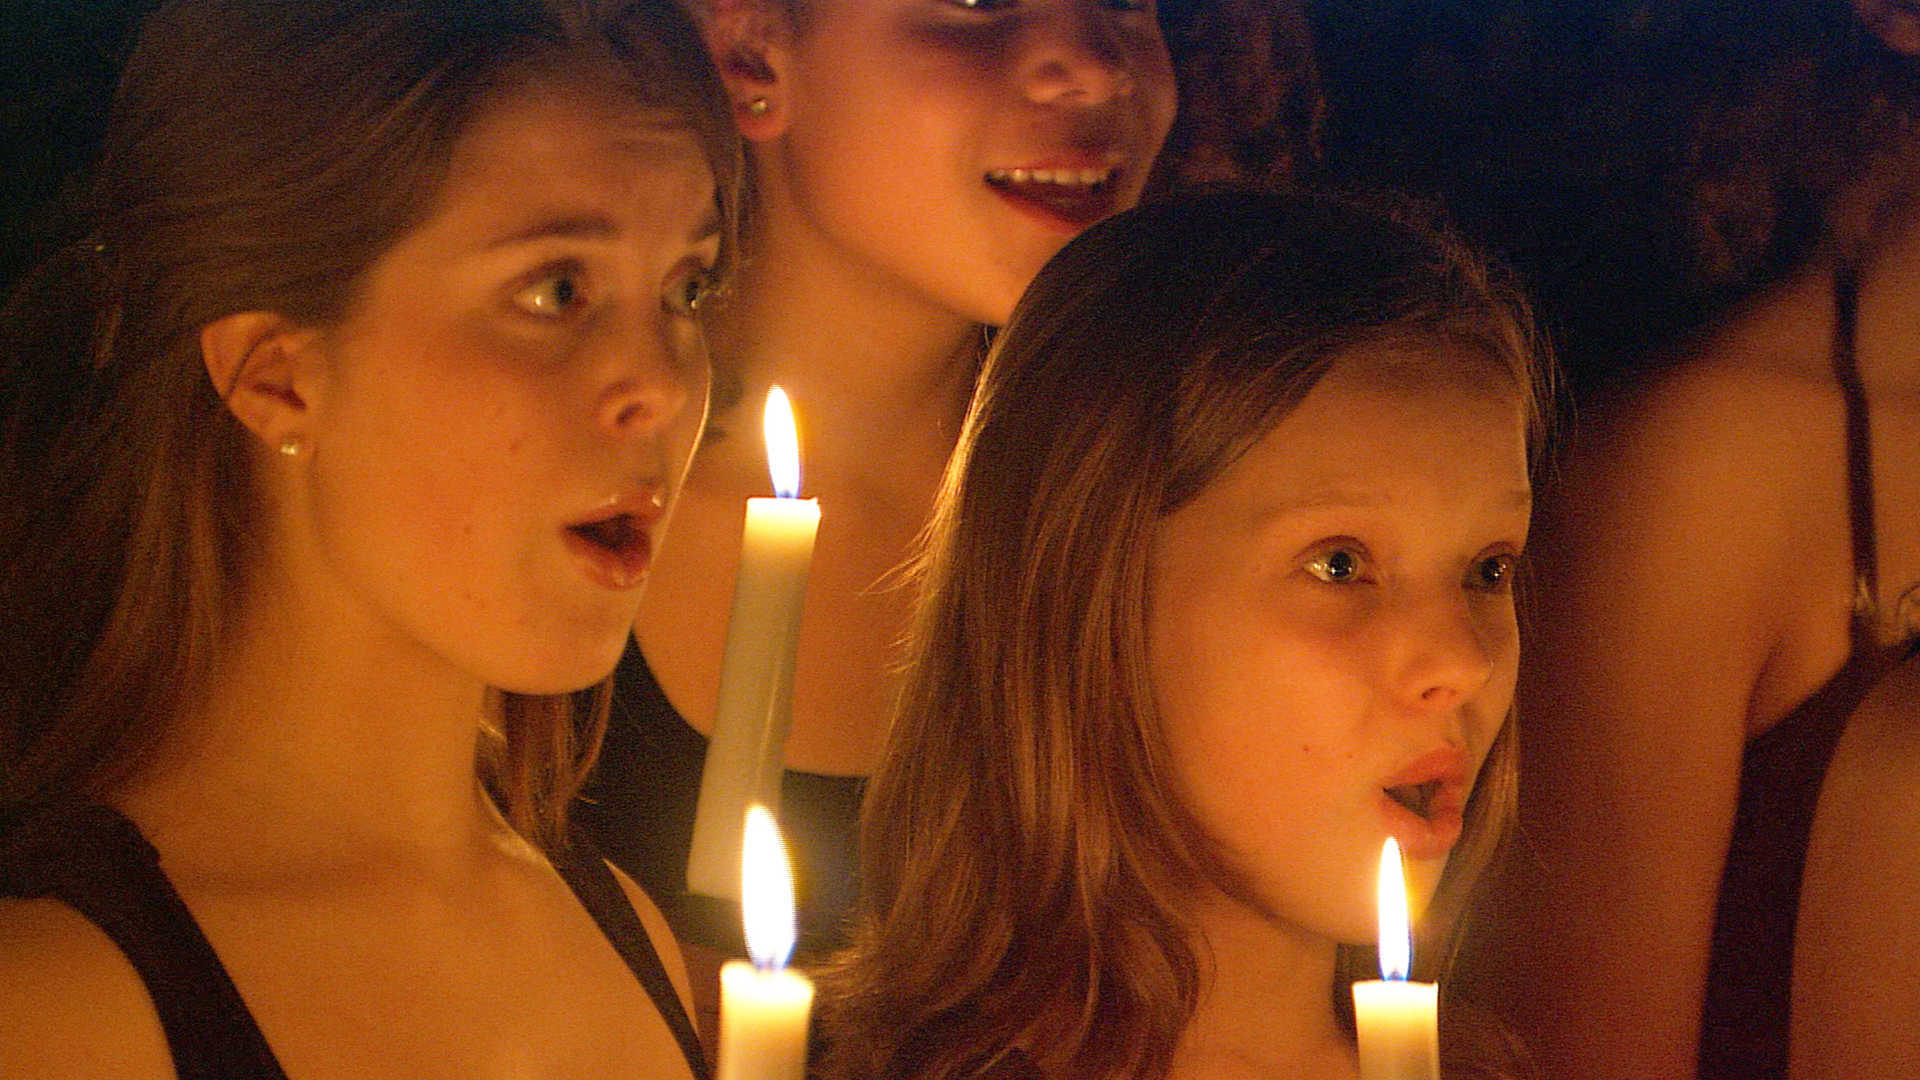 Norwegian Girls Choir